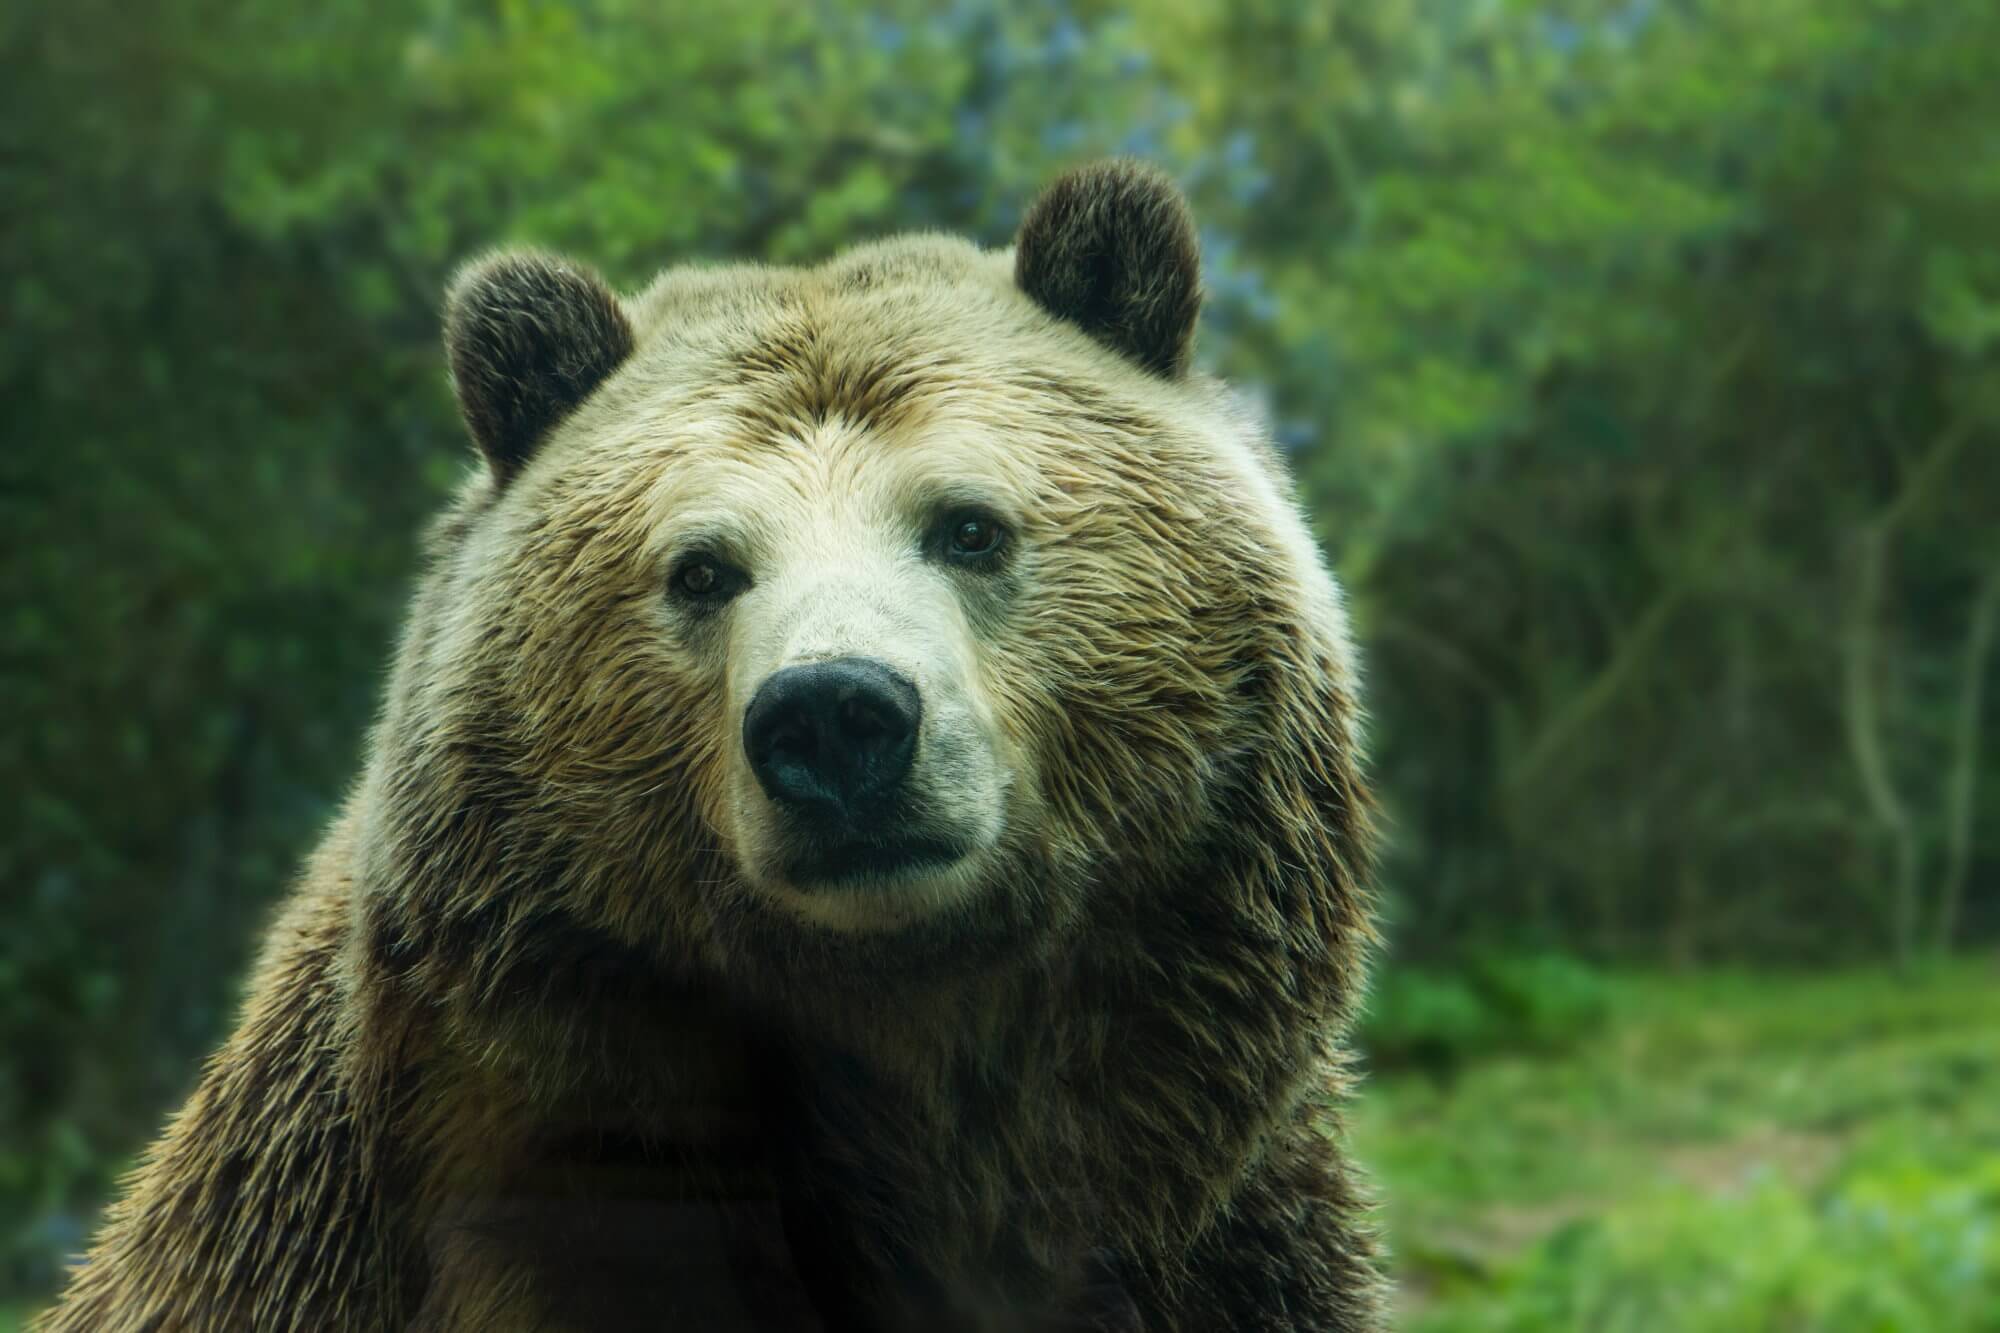 Bears var mere tilbøjelige til at angribe mennesker. Hvad er årsagen?